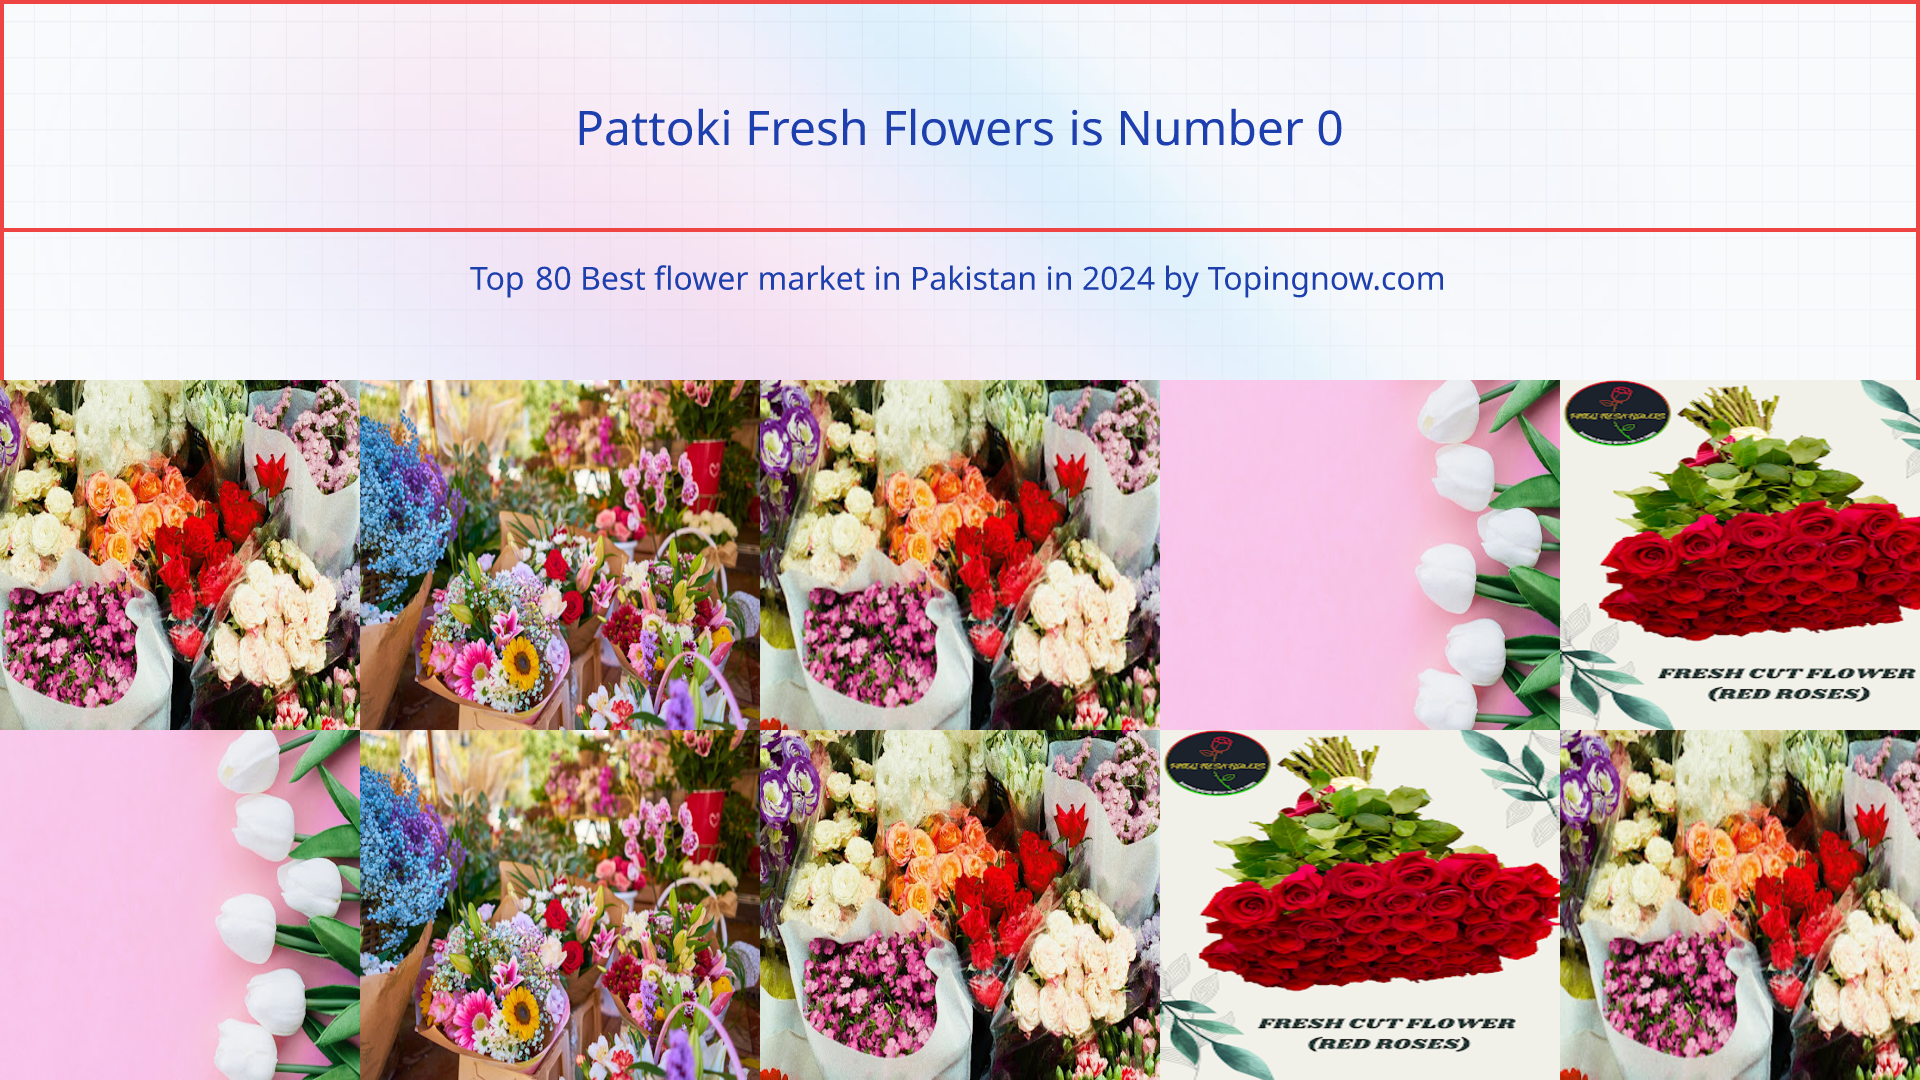 Pattoki Fresh Flowers: Top 80 Best flower market in Pakistan in 2024